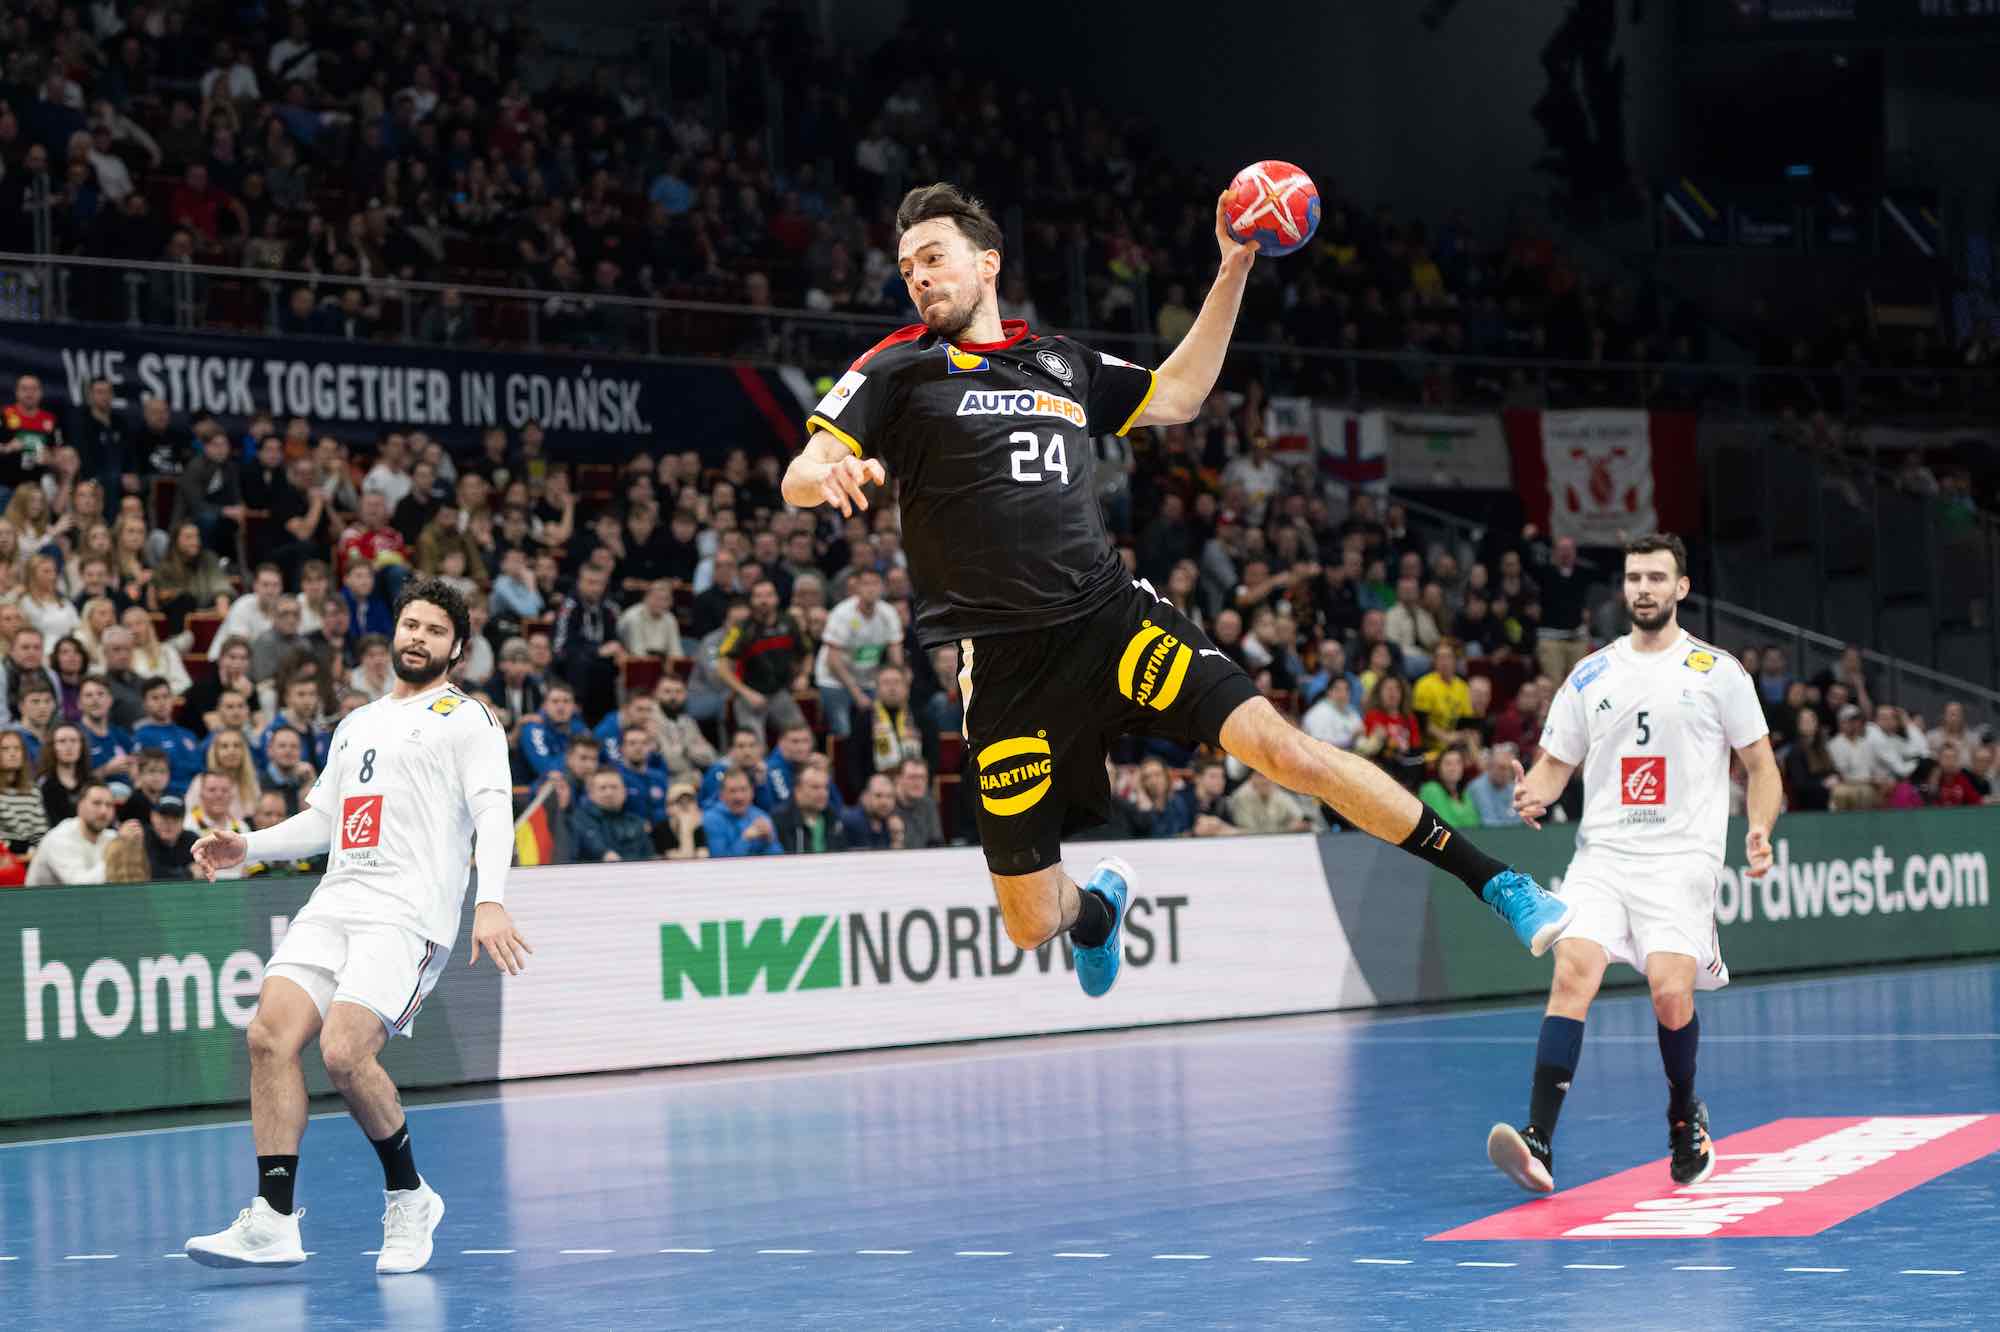 Sponsorenbekanntheit und TV-Quoten der Handball-WM 2023 SPOBIS